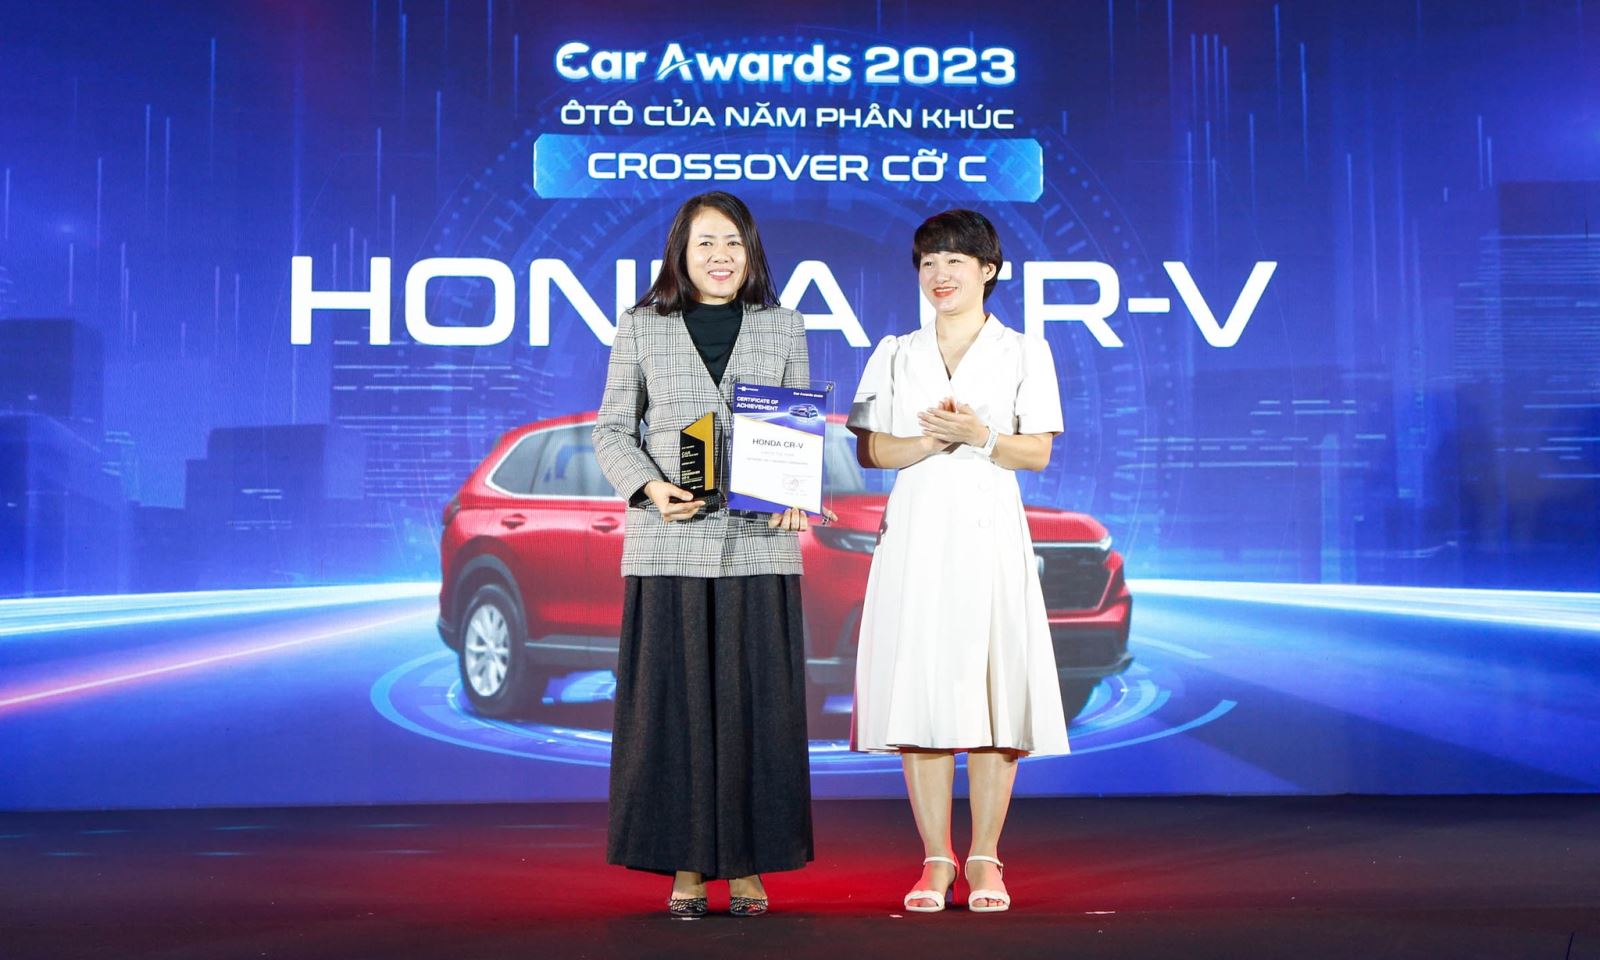 Bà Bùi Thanh Vân – Thư ký tòa soạn báo VnExpress trao Giải “Ô tô của năm” hạng mục xe Crossover cỡ C cho đại diện Công ty Honda Việt Nam – Bà Đỗ Thu Hoàng – Phó TGĐ Thứ Nhất